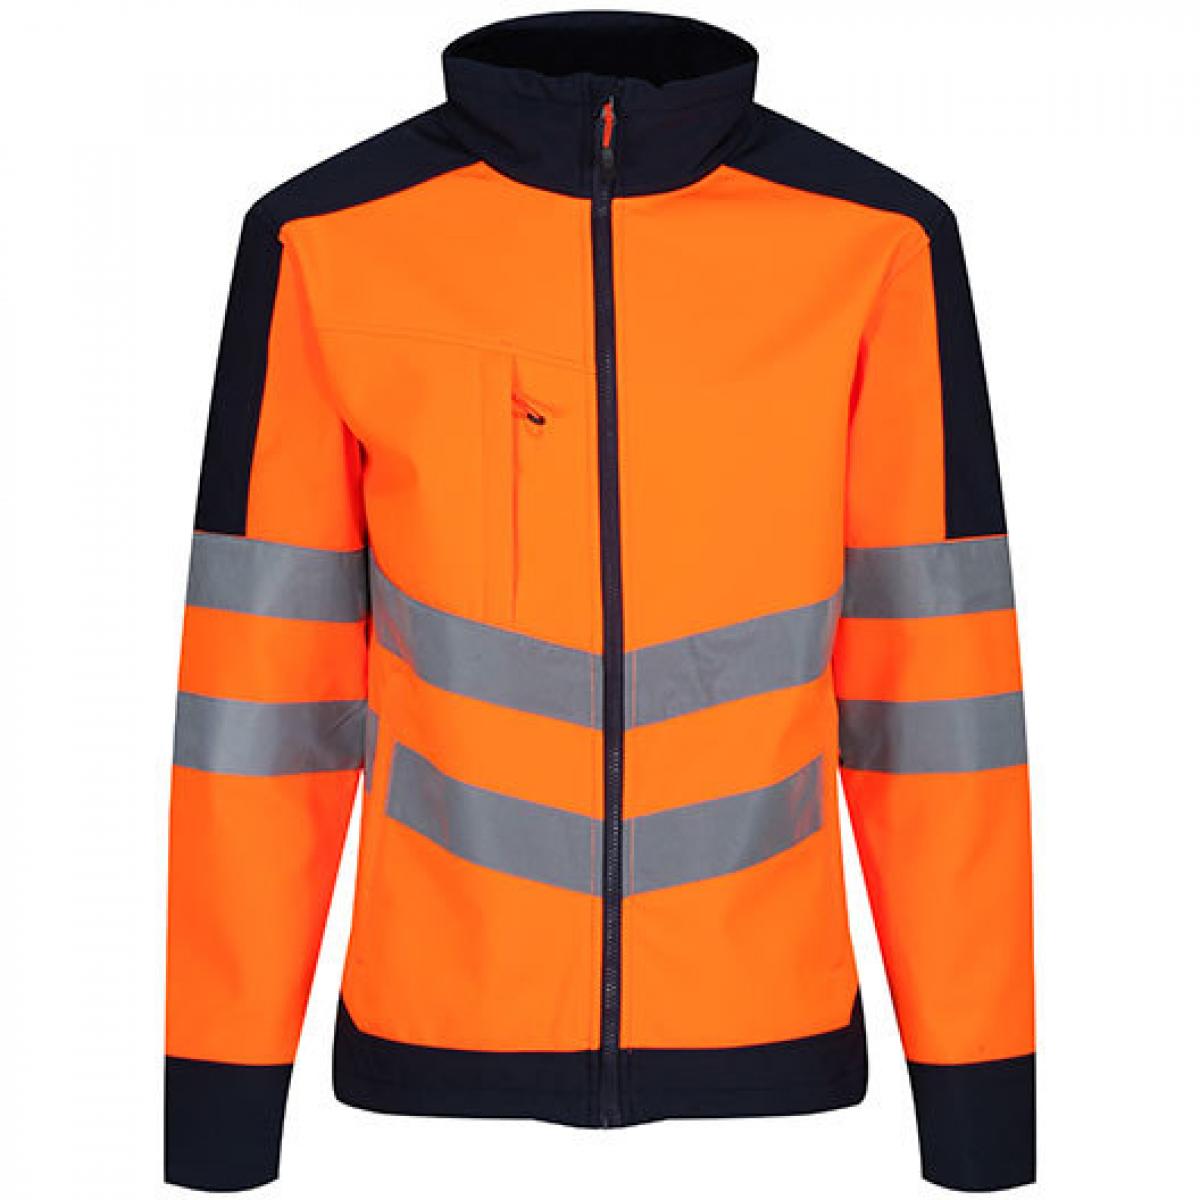 Hersteller: Regatta Herstellernummer: TRA625 Artikelbezeichnung: Herren Hi-Vis Pro Softshell Arbeitsjacke Farbe: Orange/Navy